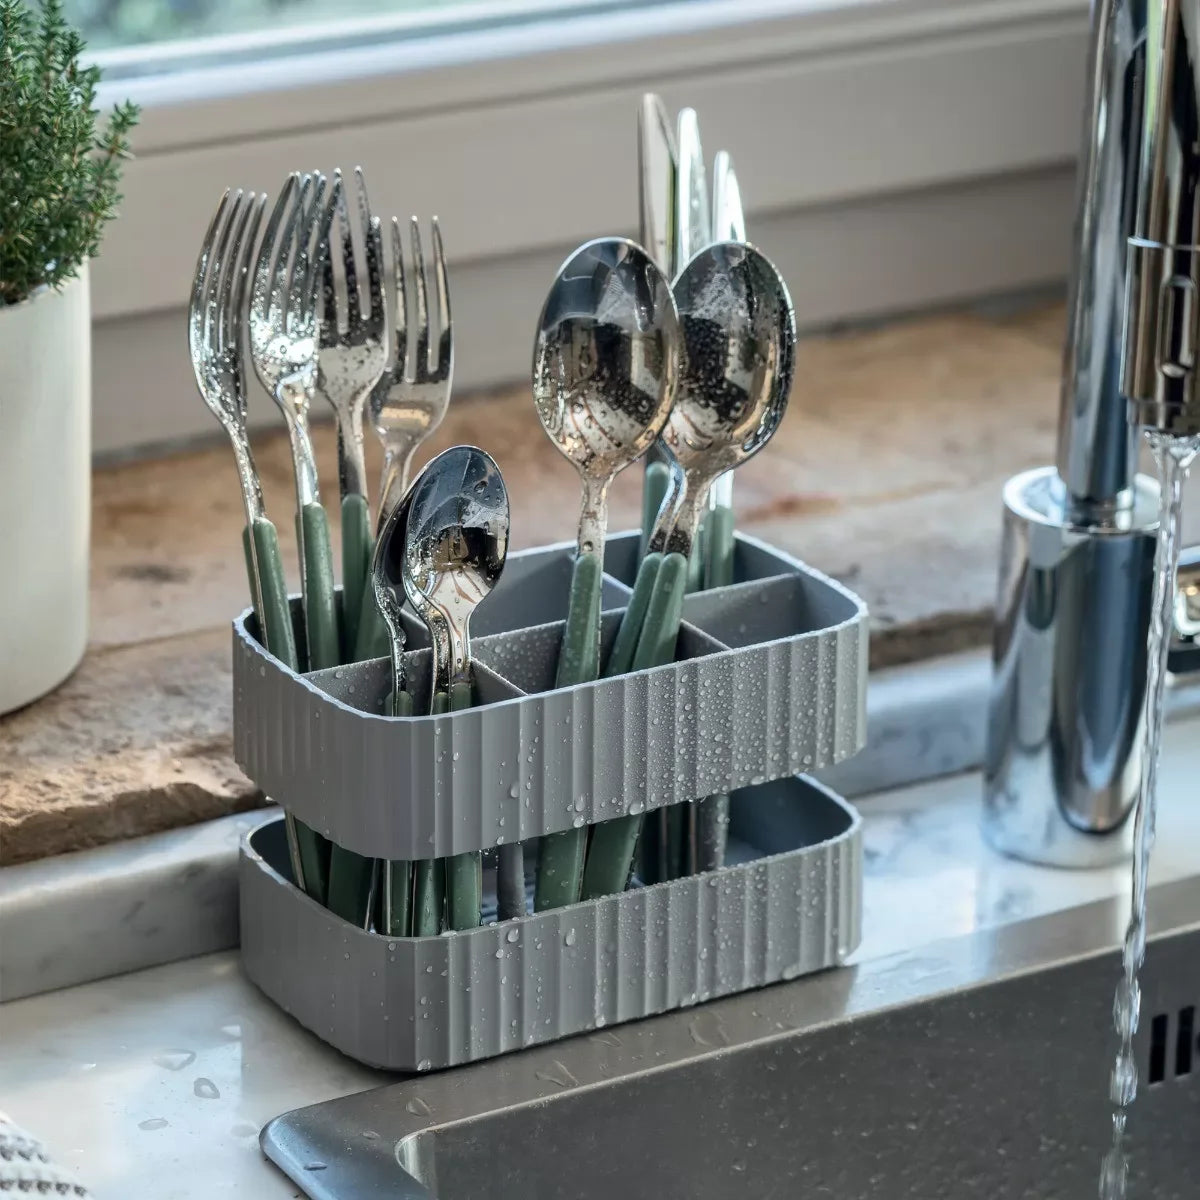 ECO-Kitchen Cutlery Safe Drainer - Matt Grey - Notbrand